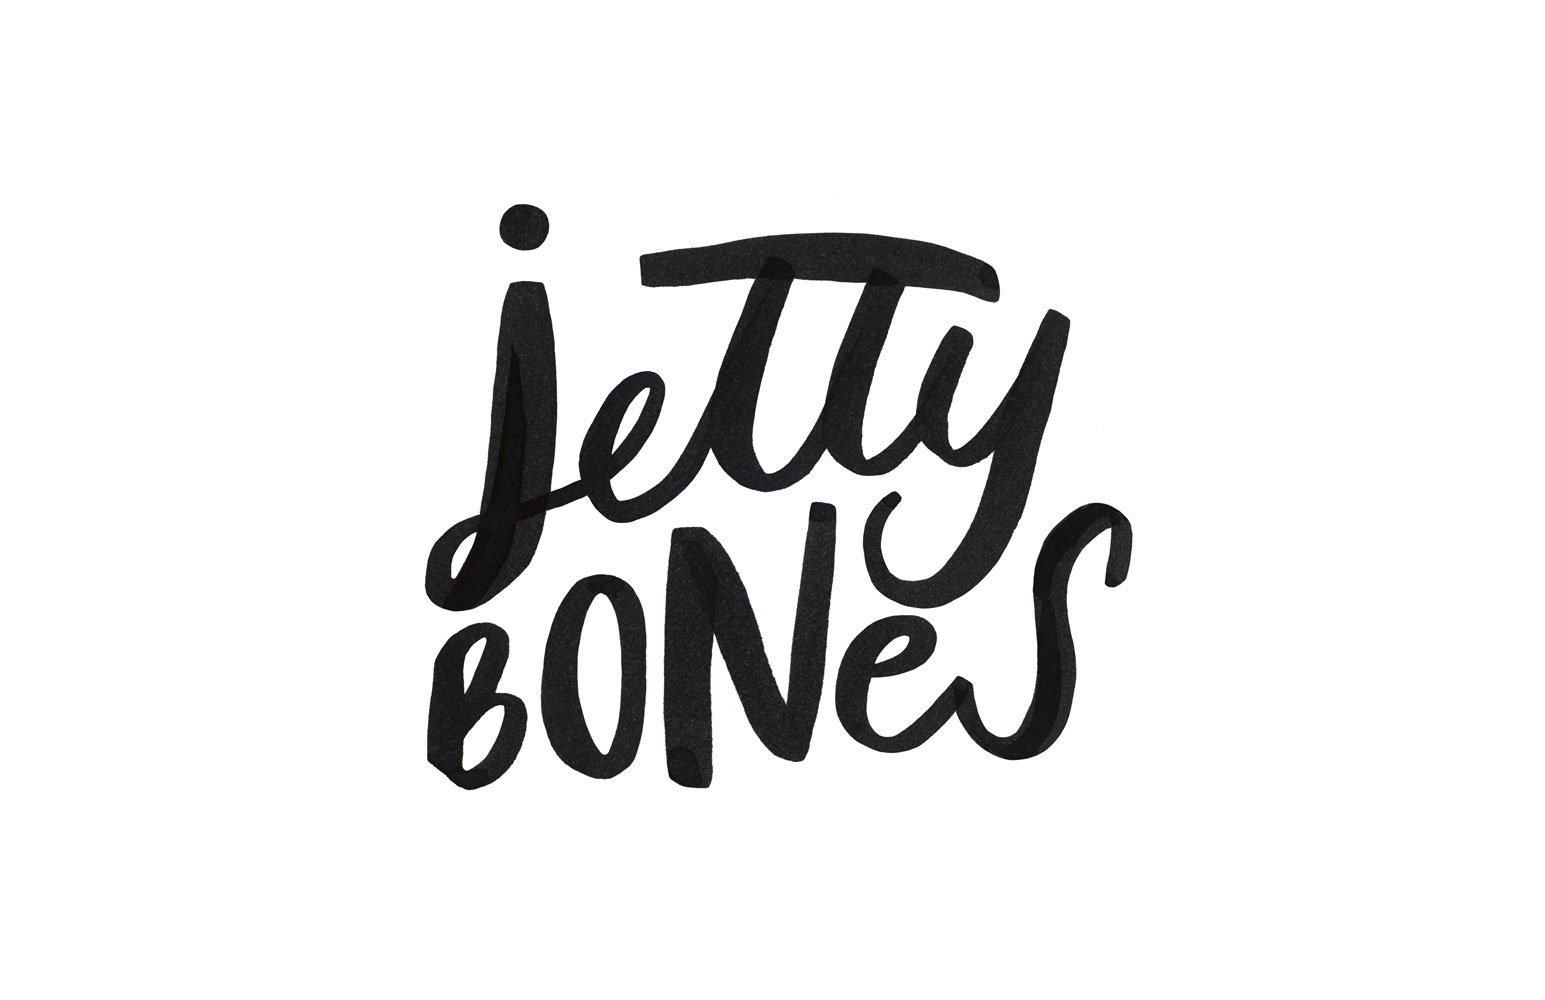 WEB_jettybones_brushlettering.jpg